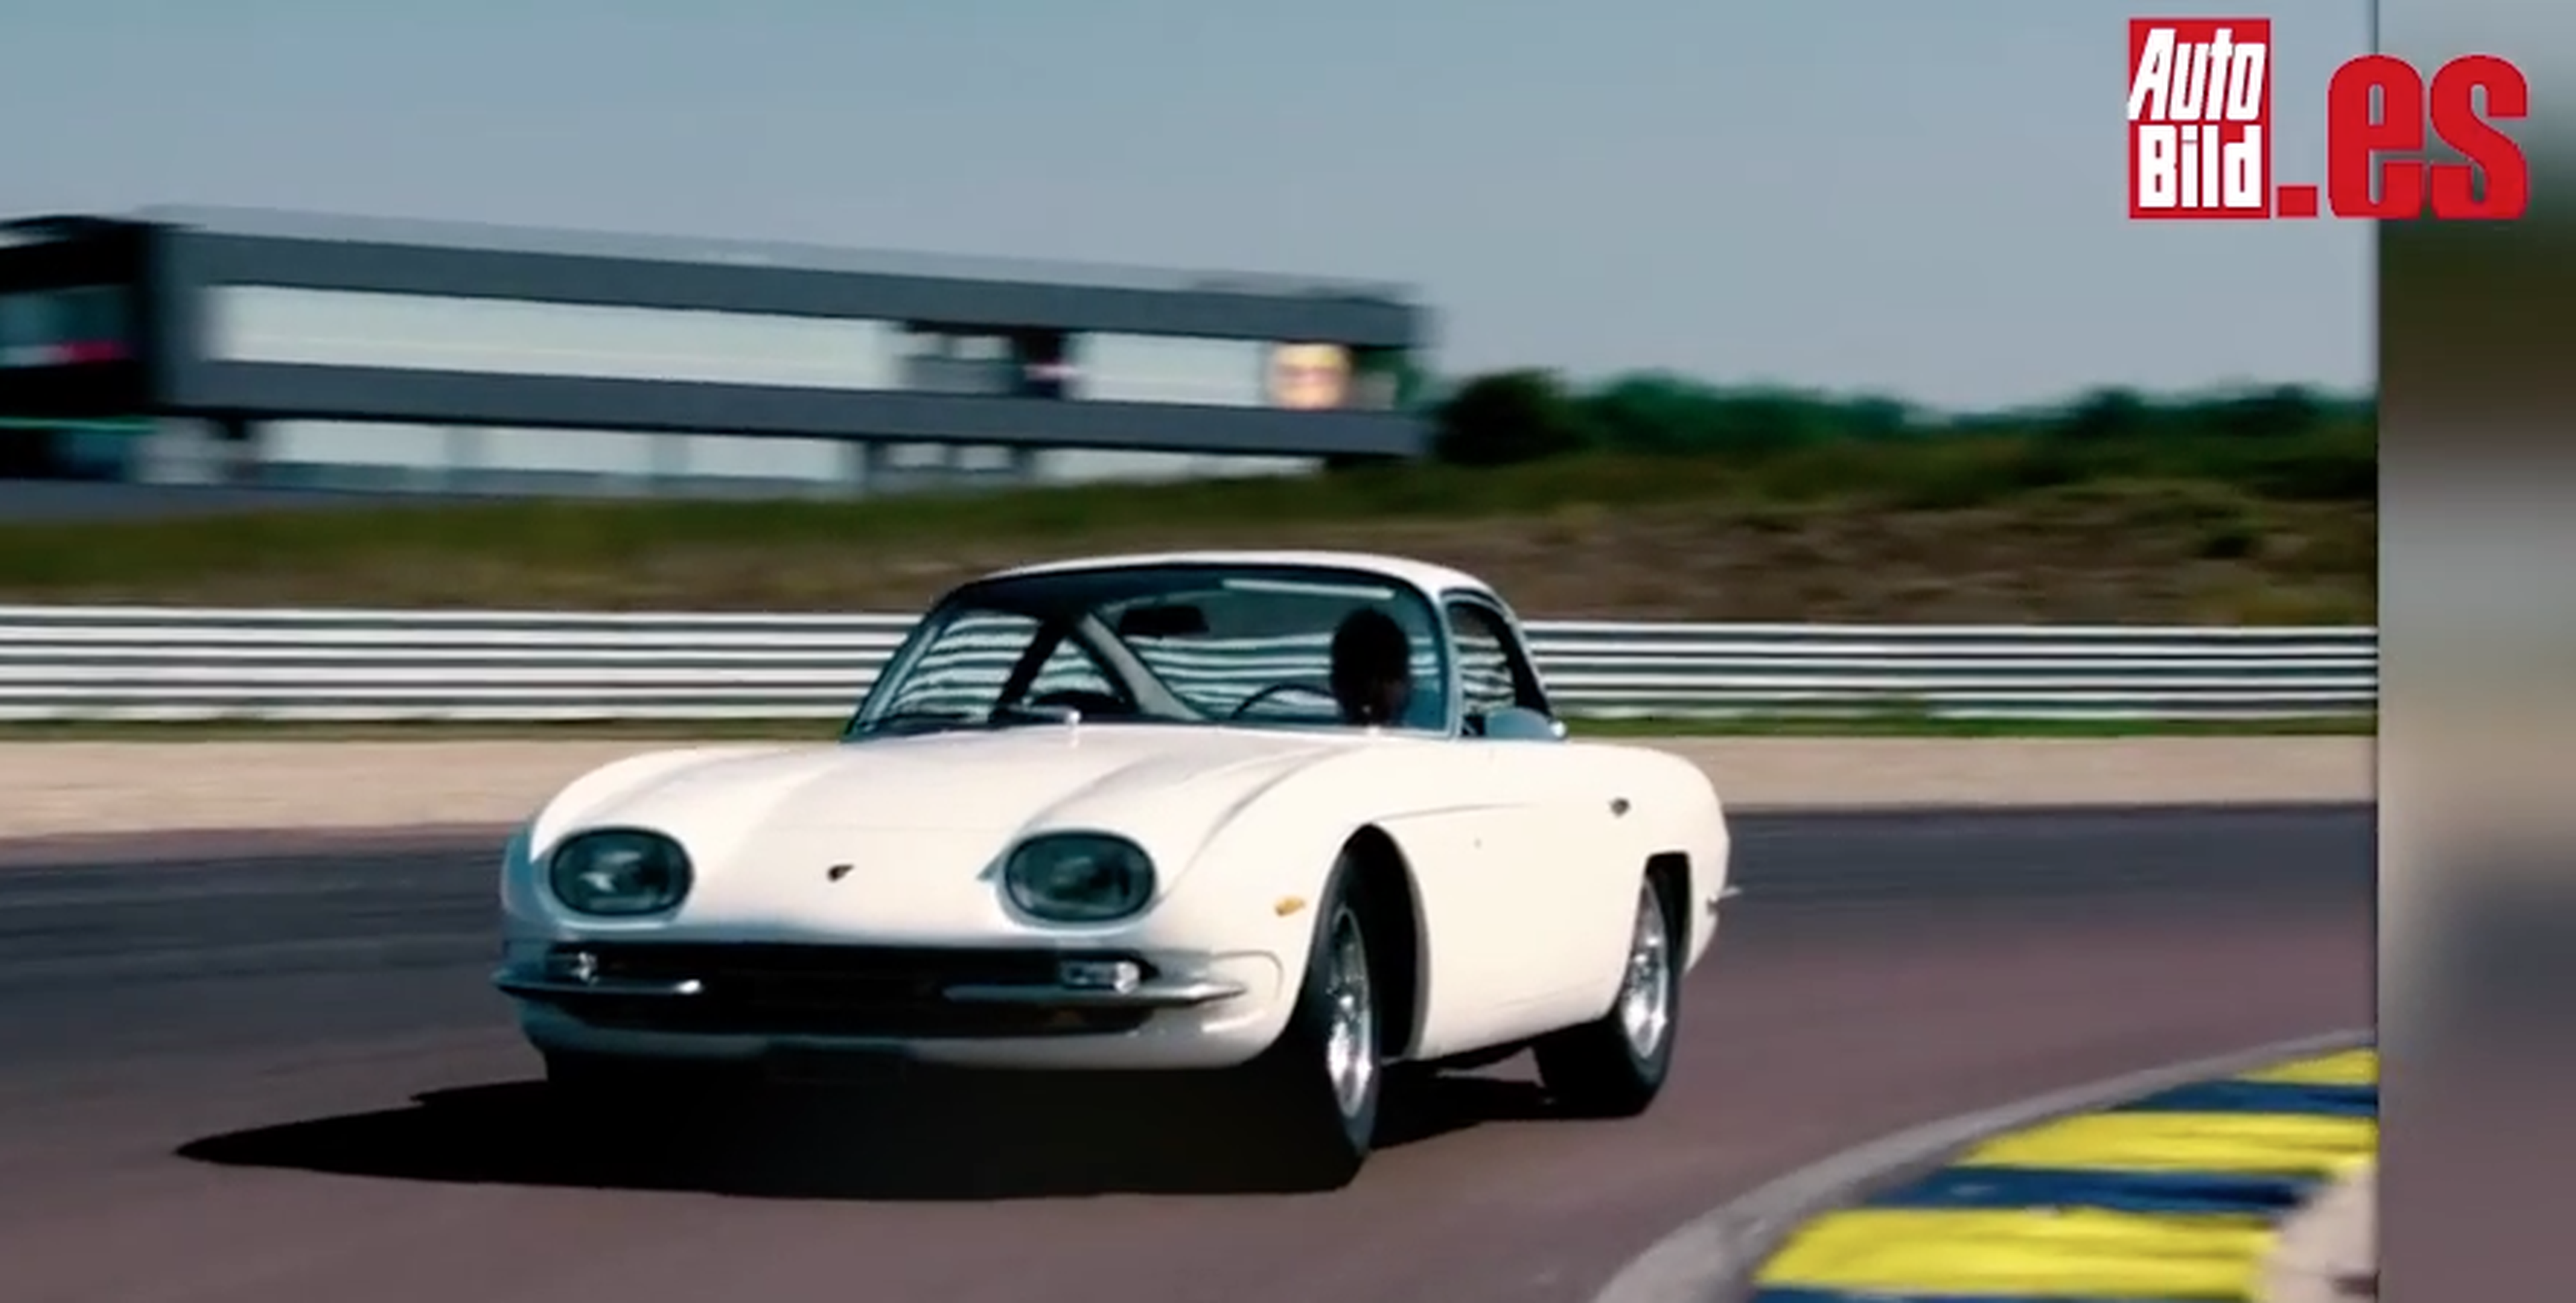 VÍDEO: ¡Qué maravilla! Así quedó un Lamborghini 350 GT restaurado